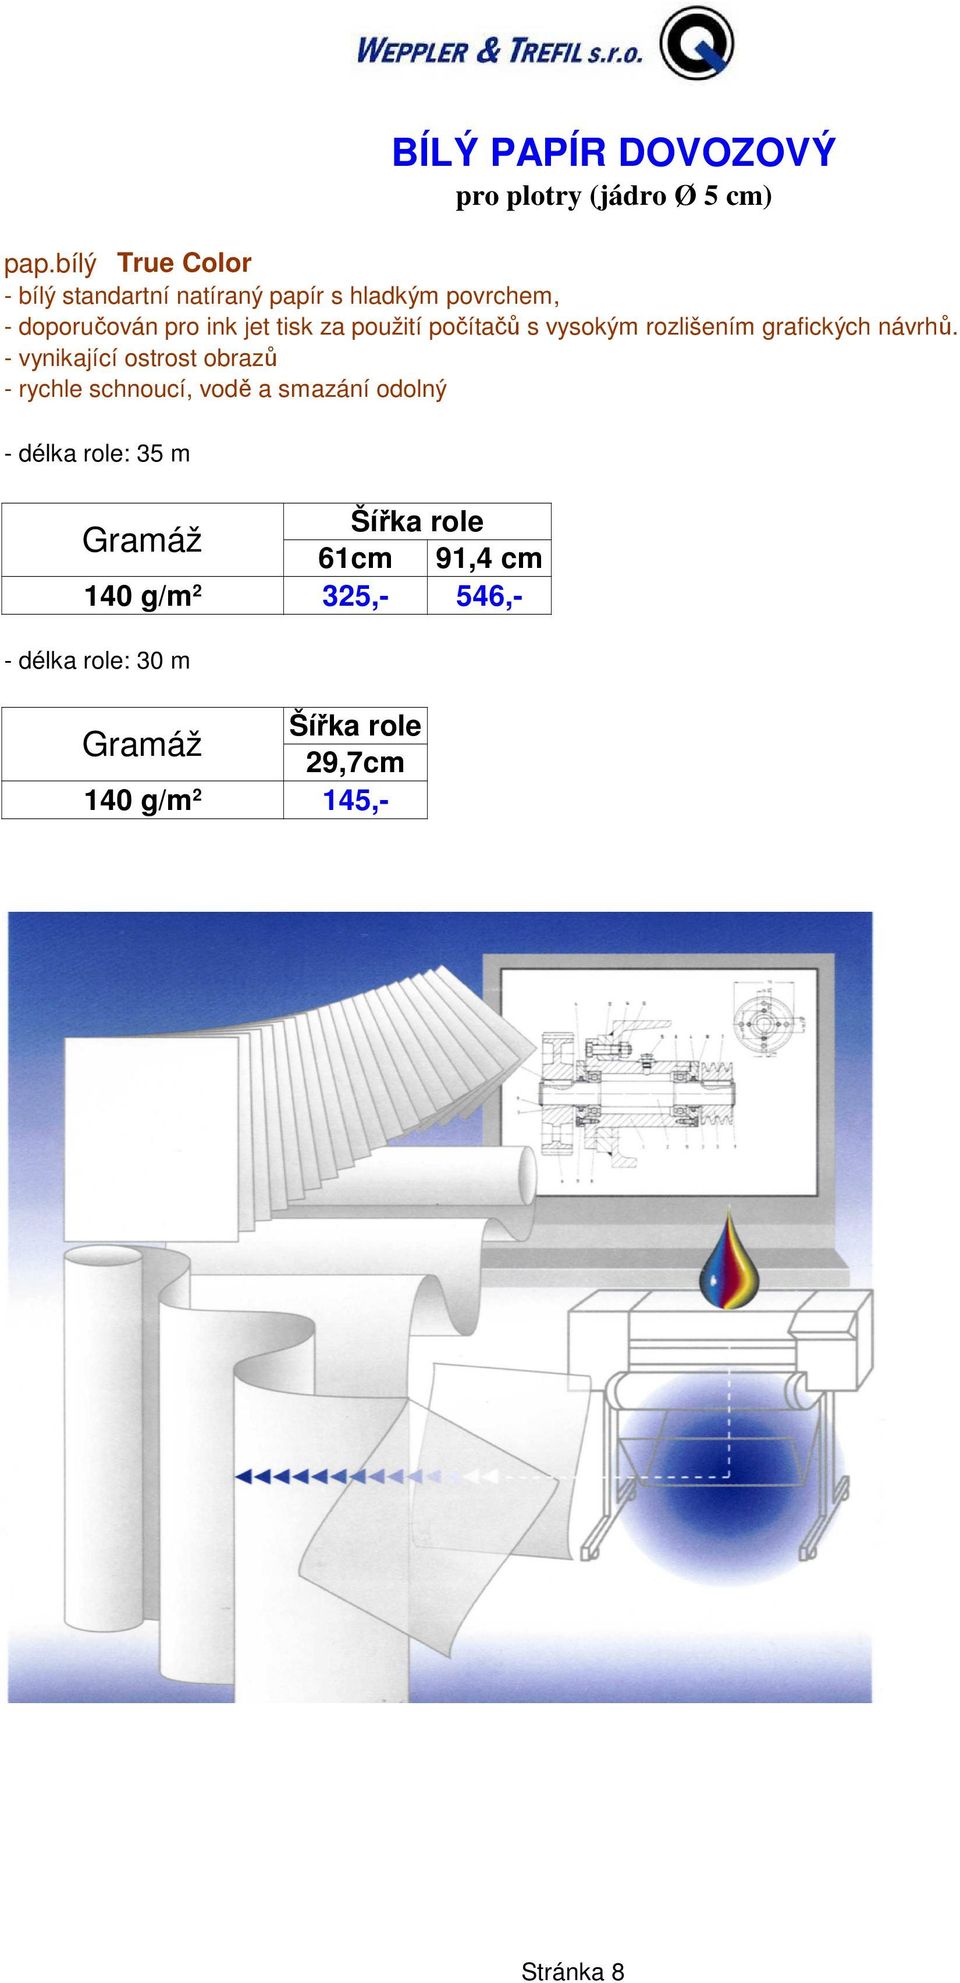 tisk za použití počítačů s vysokým rozlišením grafických návrhů.